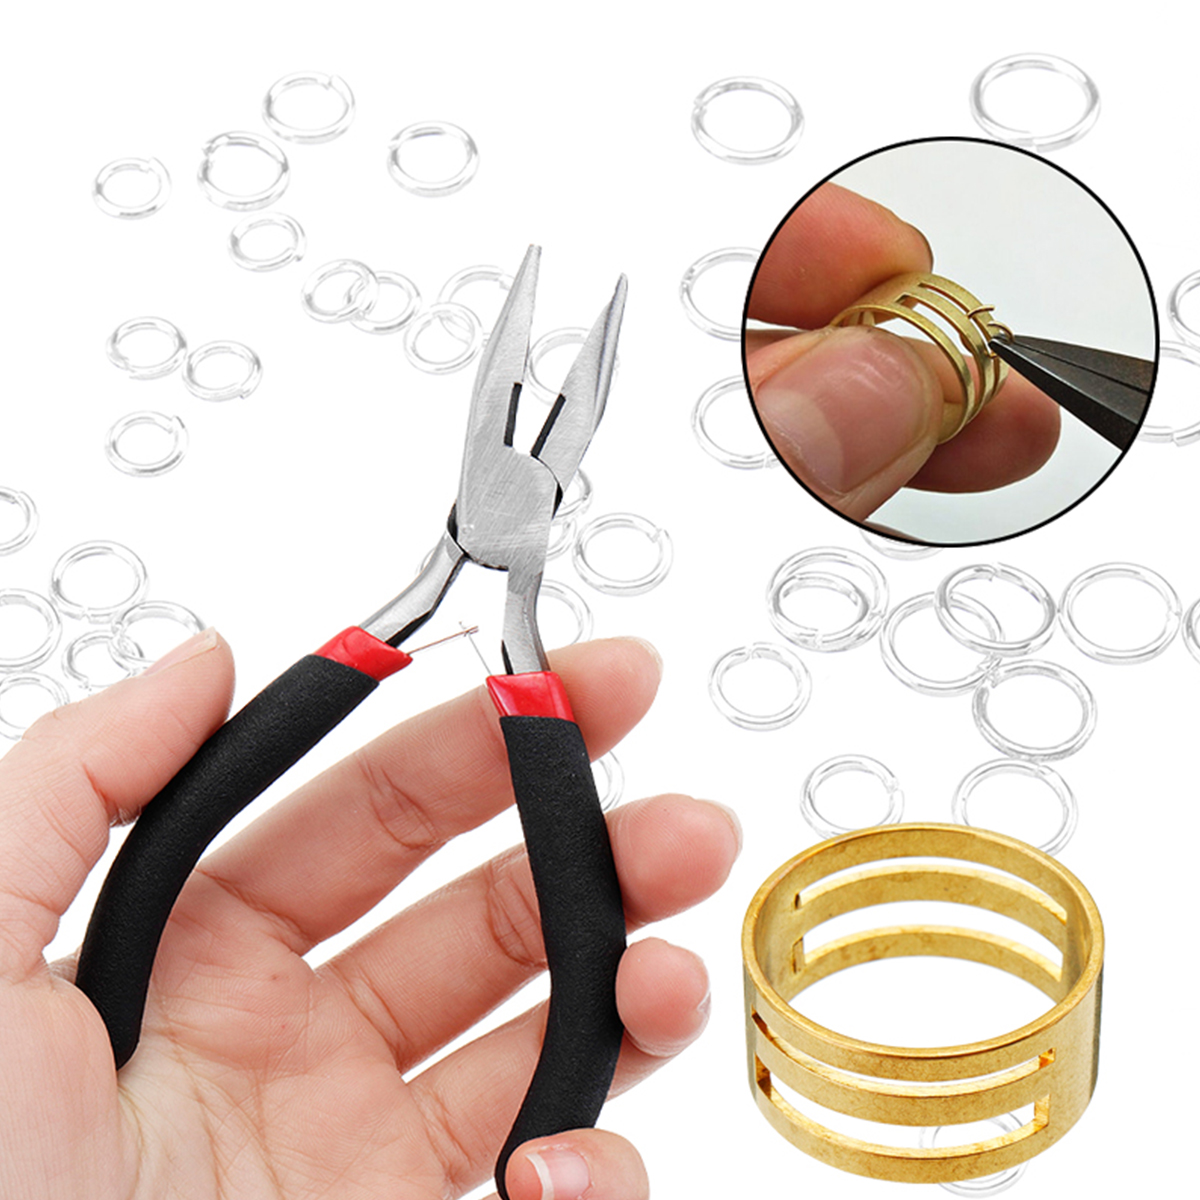 DIY-Jewelry-Making-Findings-Kit-Metal-Jump-Rings-Lobster-Clasp-Pliers-Tool-Set-1420893-2